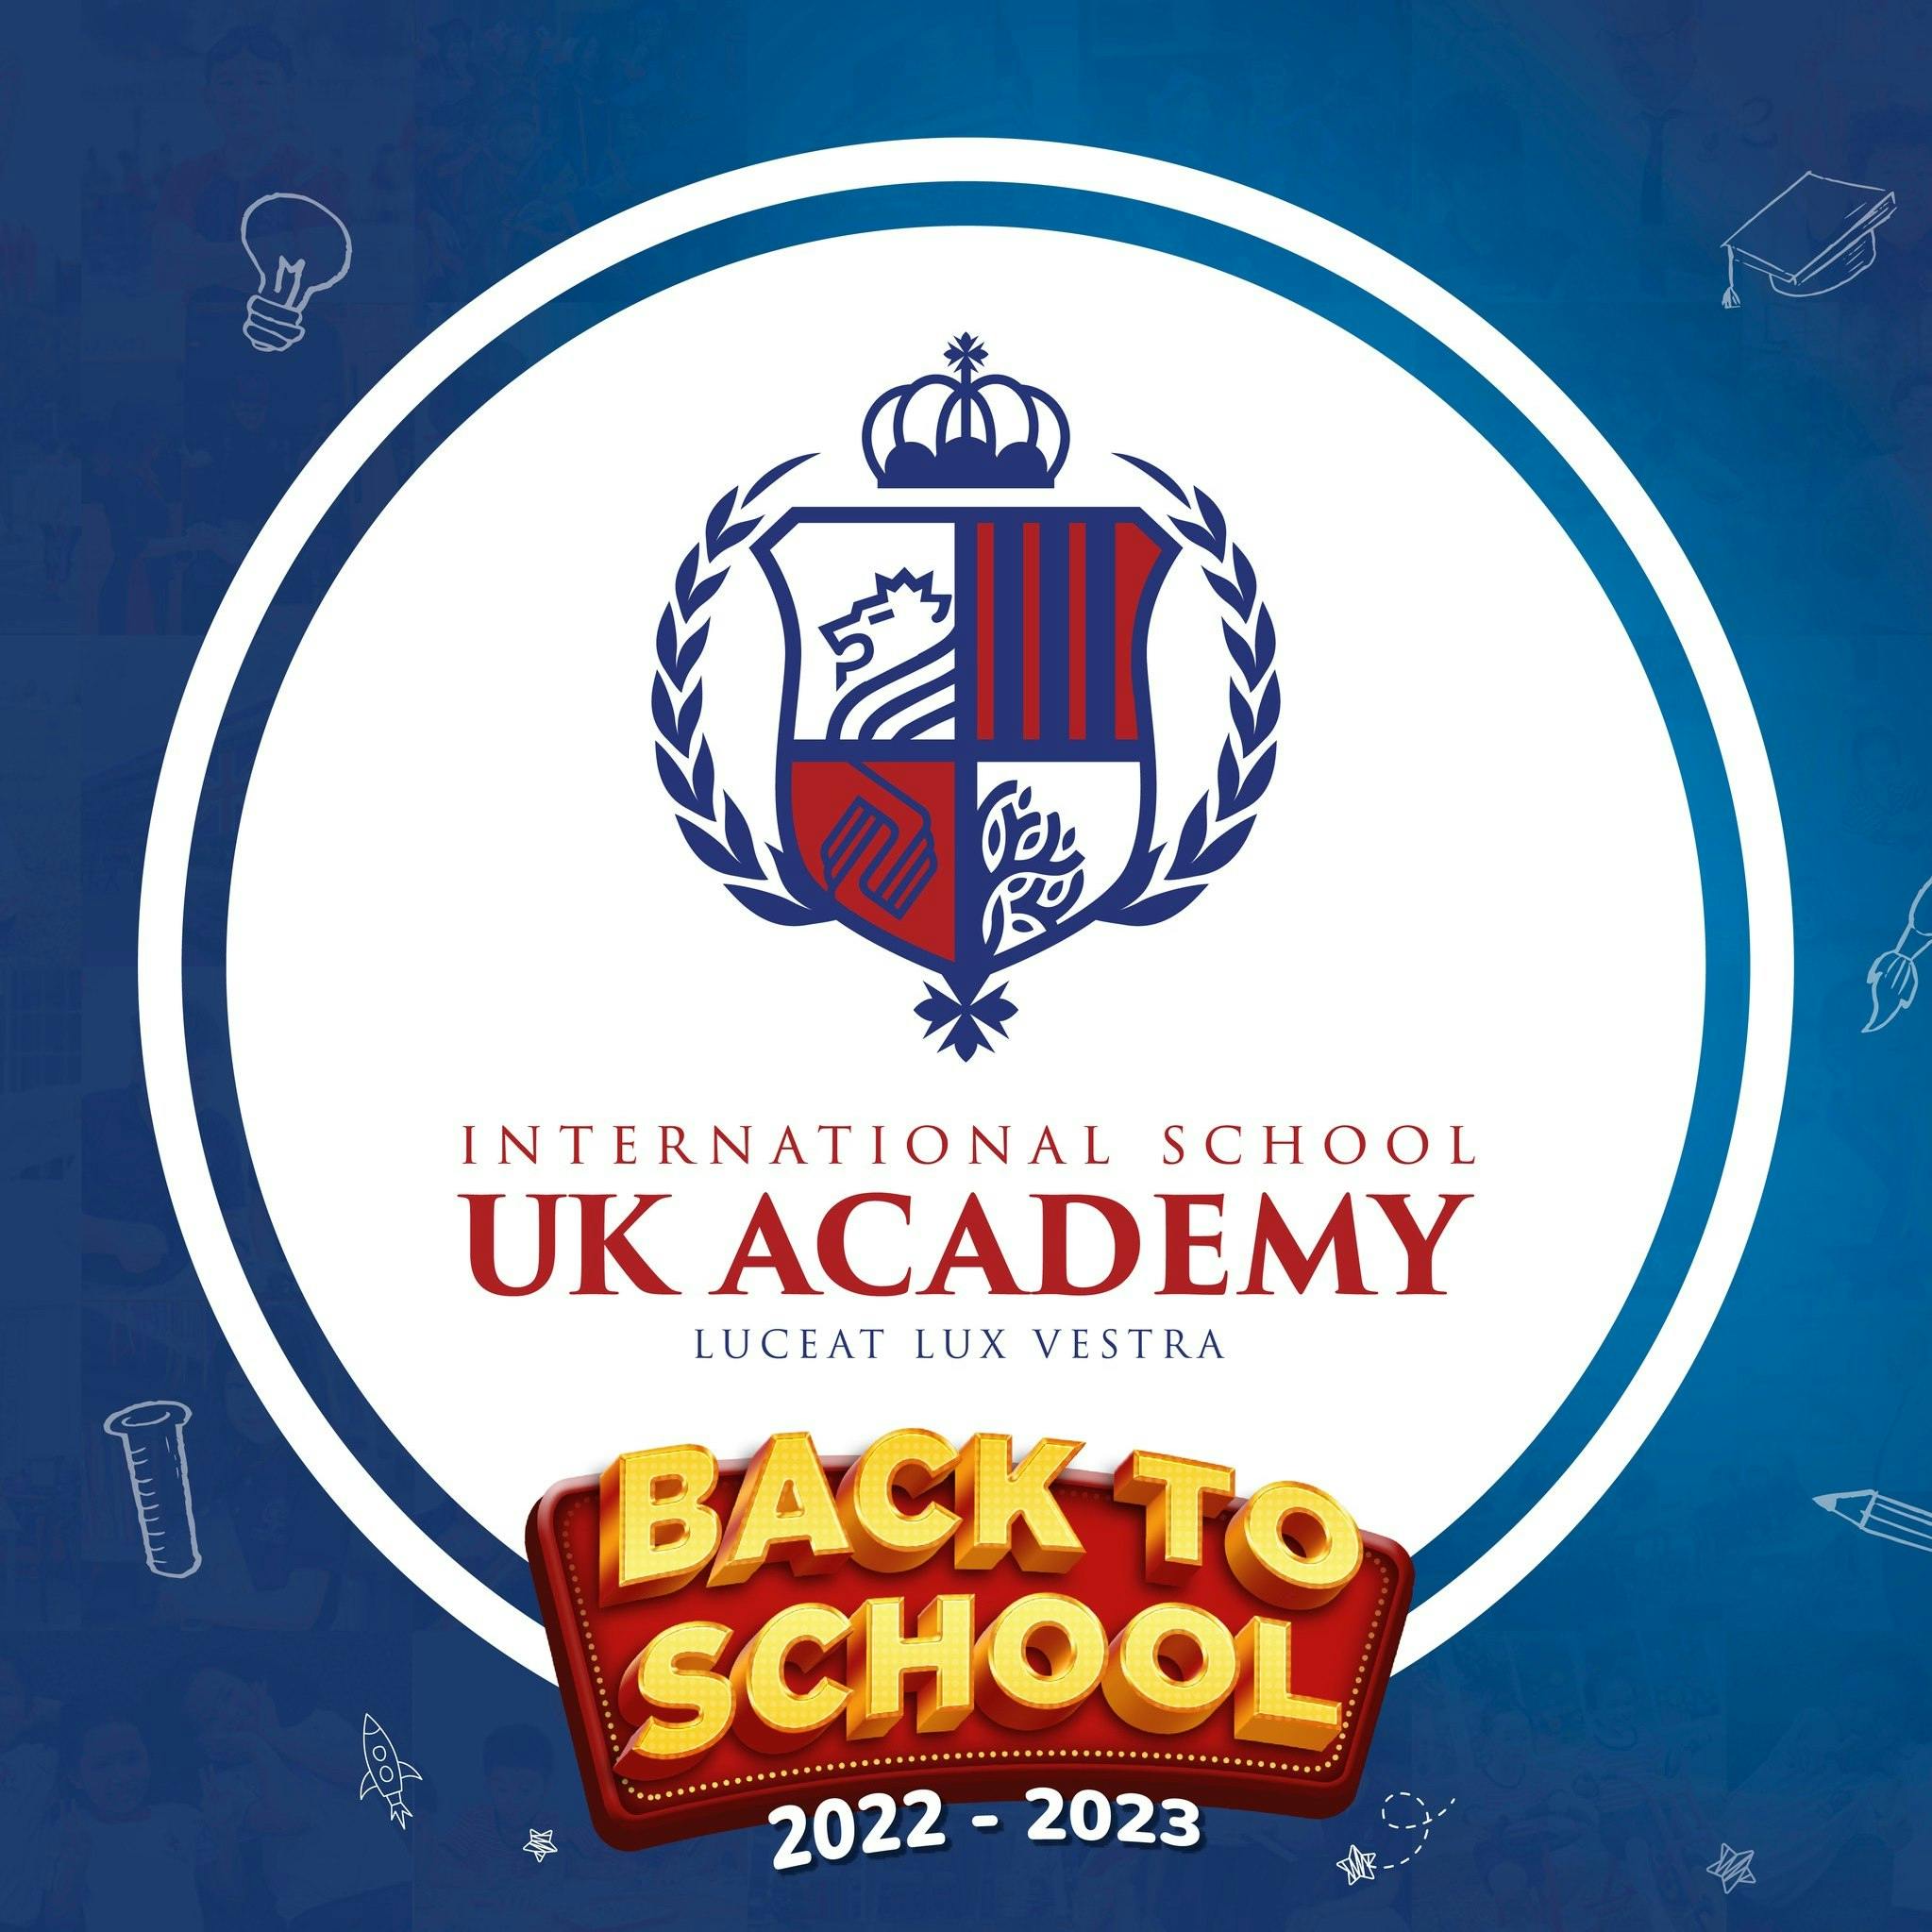 UK Academy